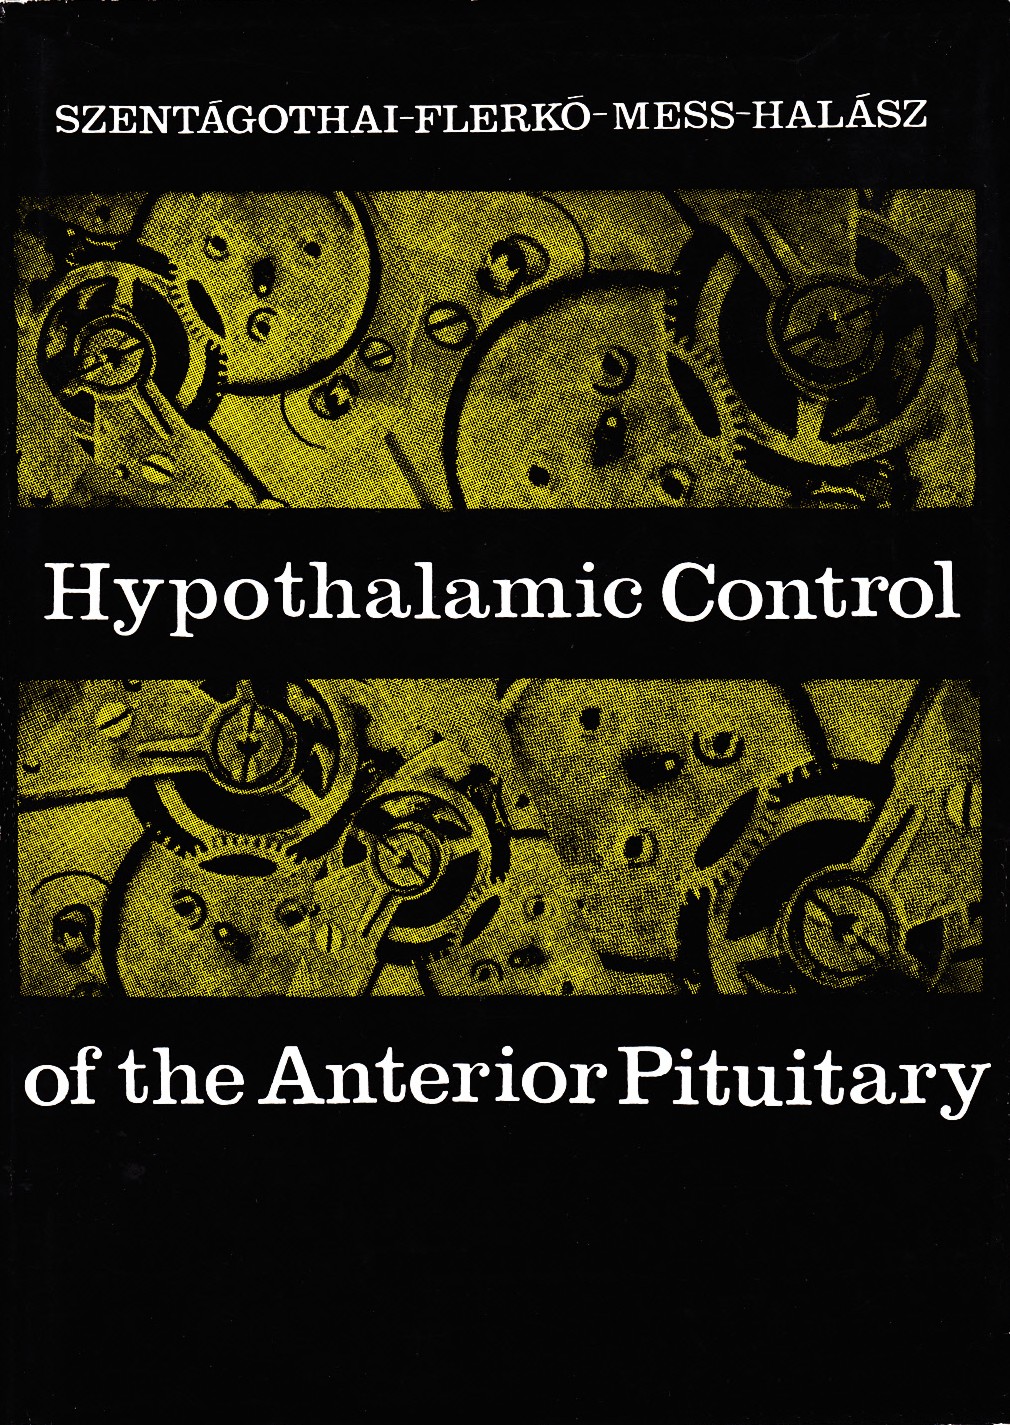 Szentagothai, J., B. Flerko, B. Mess, and B. Halasz (1962) Hypothalamic Control of the Anterior Pituitary. Budapest: Akadémiai Kiadó.